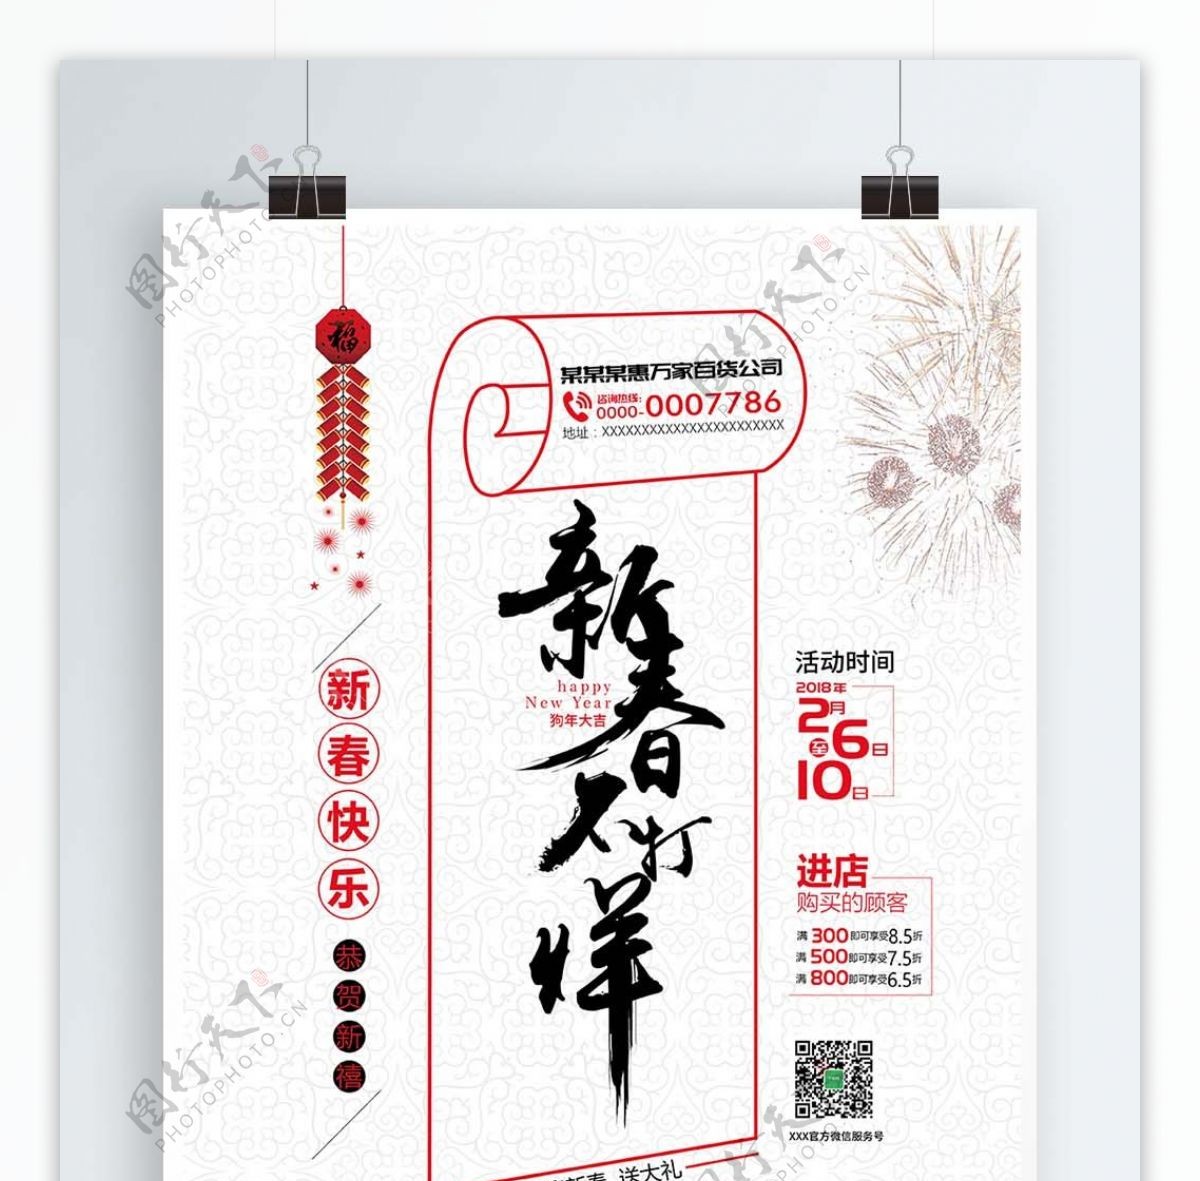 平面广告创意版式设计毛笔字体春节促销新春不打烊清新简约海报